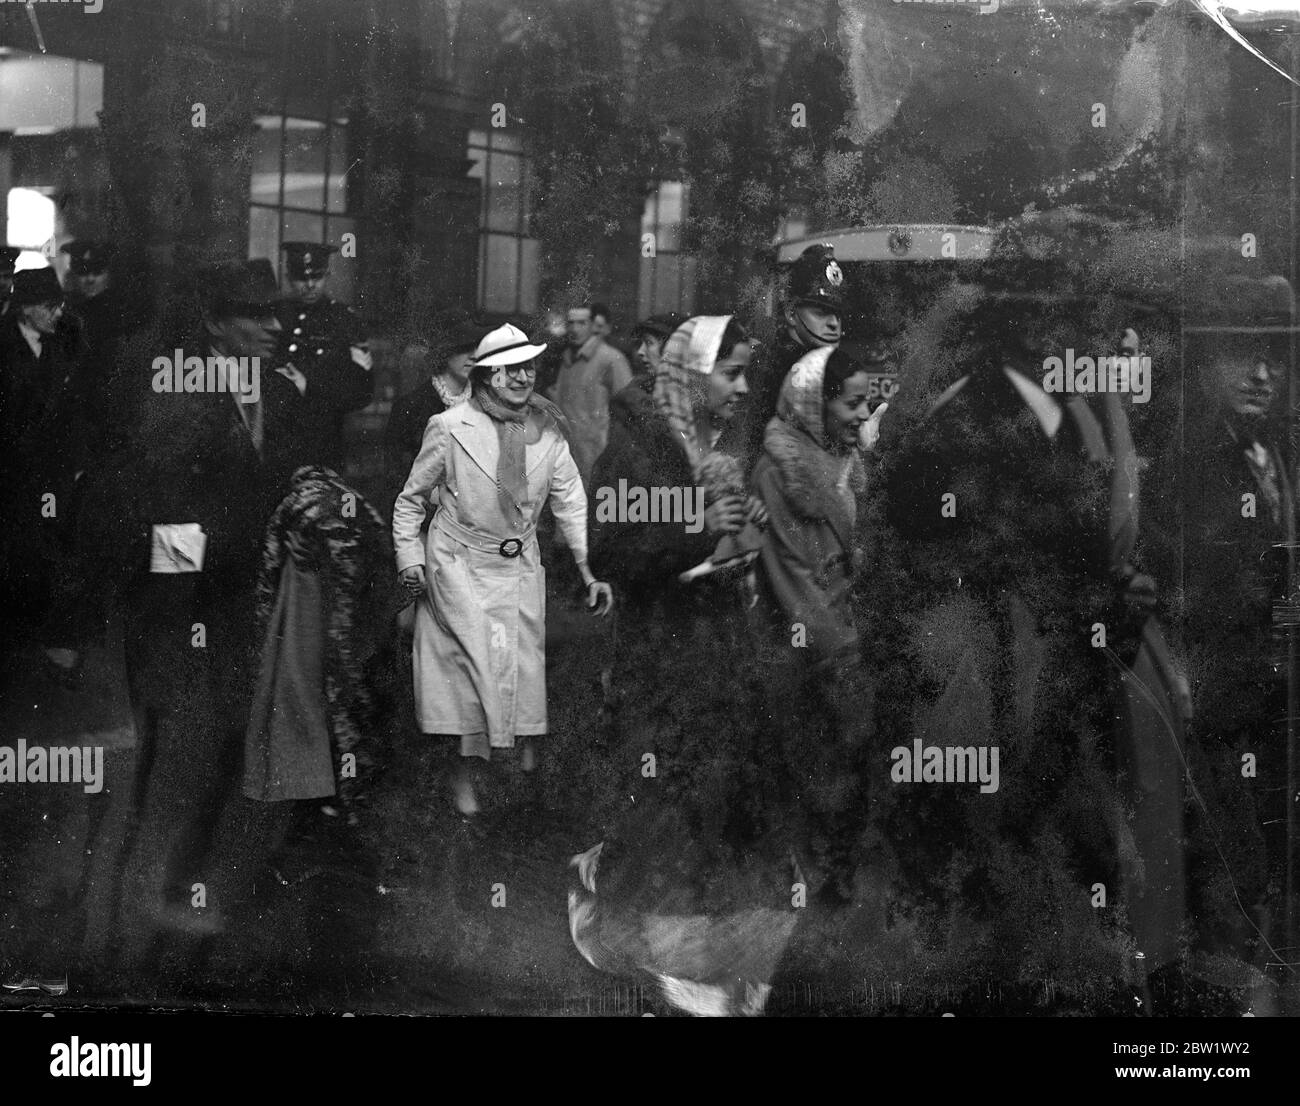 Maharani von Jaipur entstehen mit ihren Kindern für Krönung. Der Maharani von Jaipur, Gemahlin einer der wichtigsten herrschenden Prinzessinnen von Indien, kam in Liverpool an Bord des Liners Tuscania mit ihren Stiefkindern, um die Krönung zu besuchen. Der 26-jährige Maharadscha fliegt nach London. Foto zeigt den Maharani von Jaipur bei der Ankunft in Liverpool in der Mitte mit weißem Mantel. 13. April 1937 Stockfoto